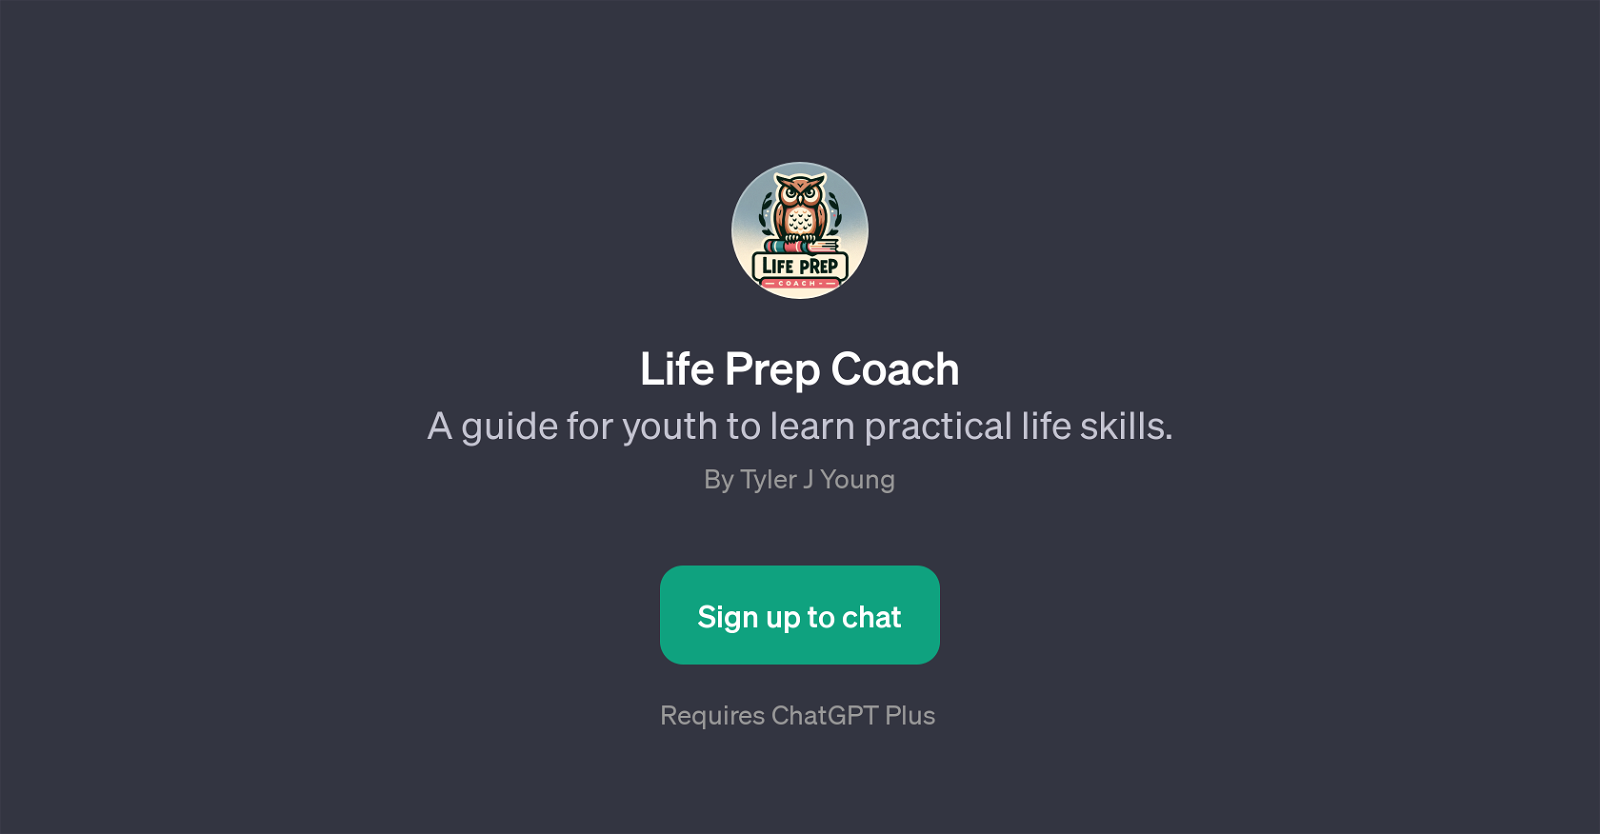 Life Prep Coach website